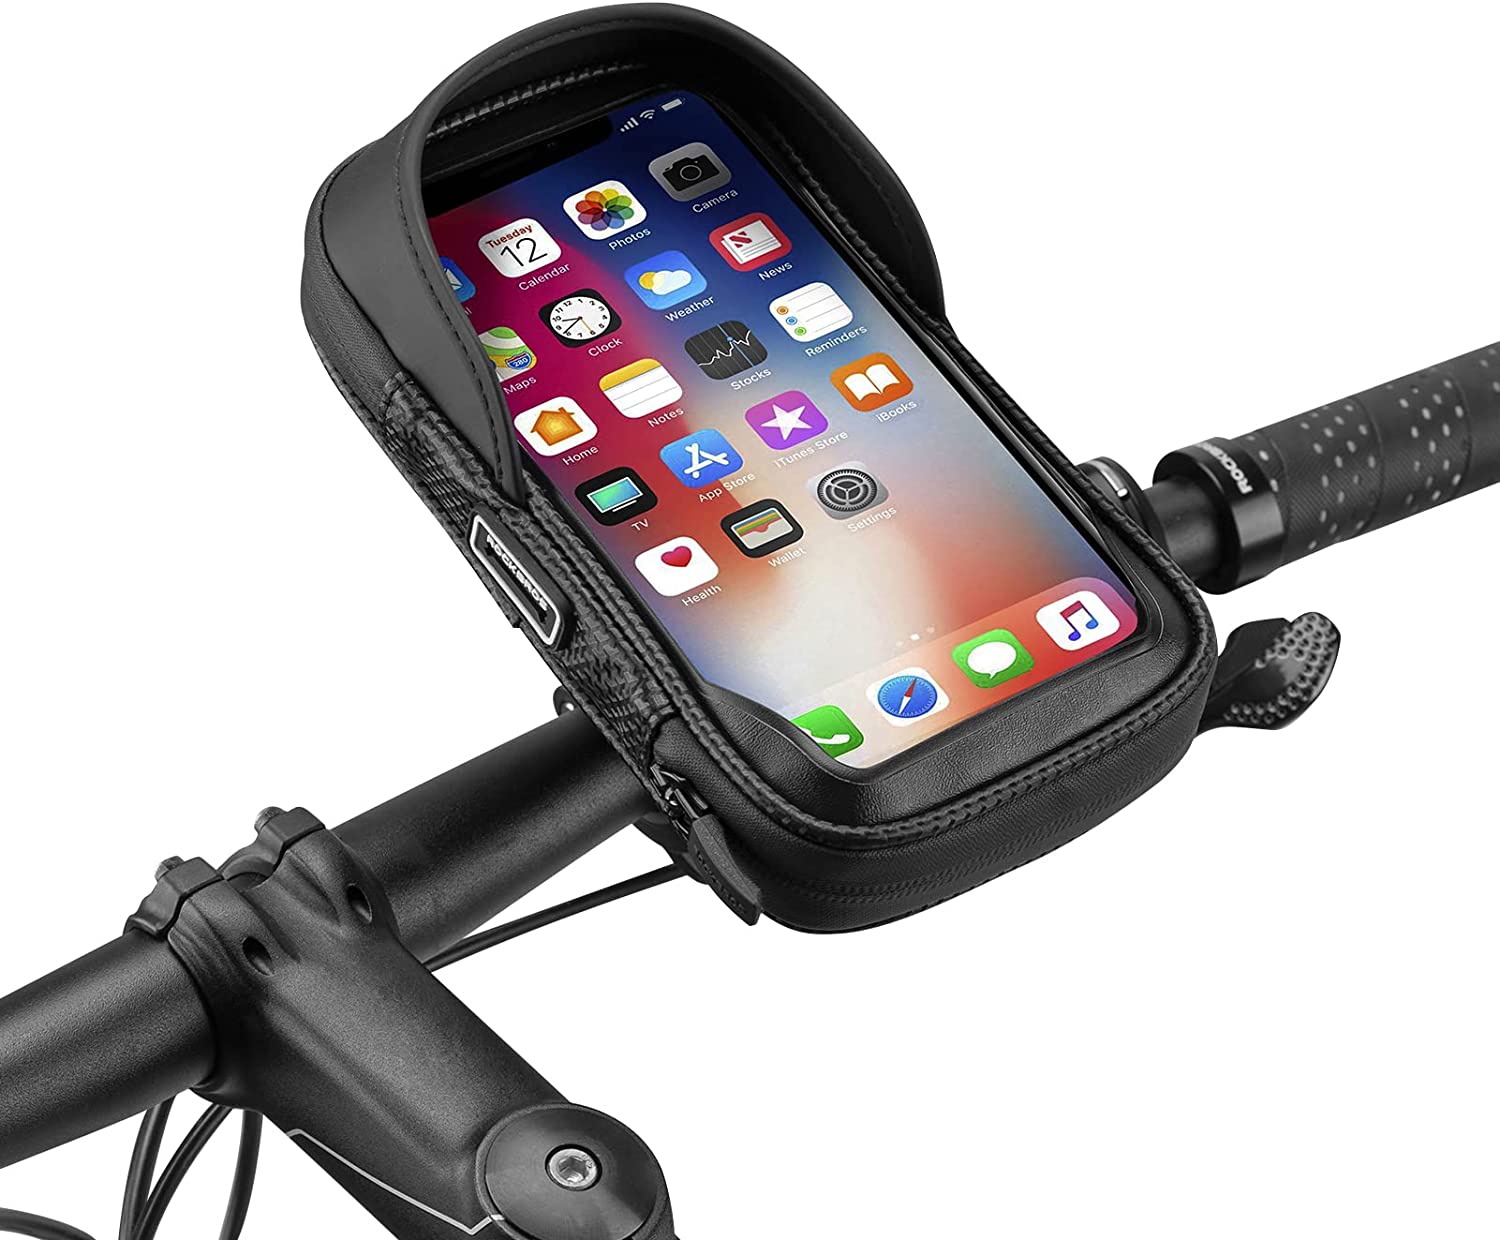 ROCKBROS Bike Phone Mount Waterproof and Shockproof